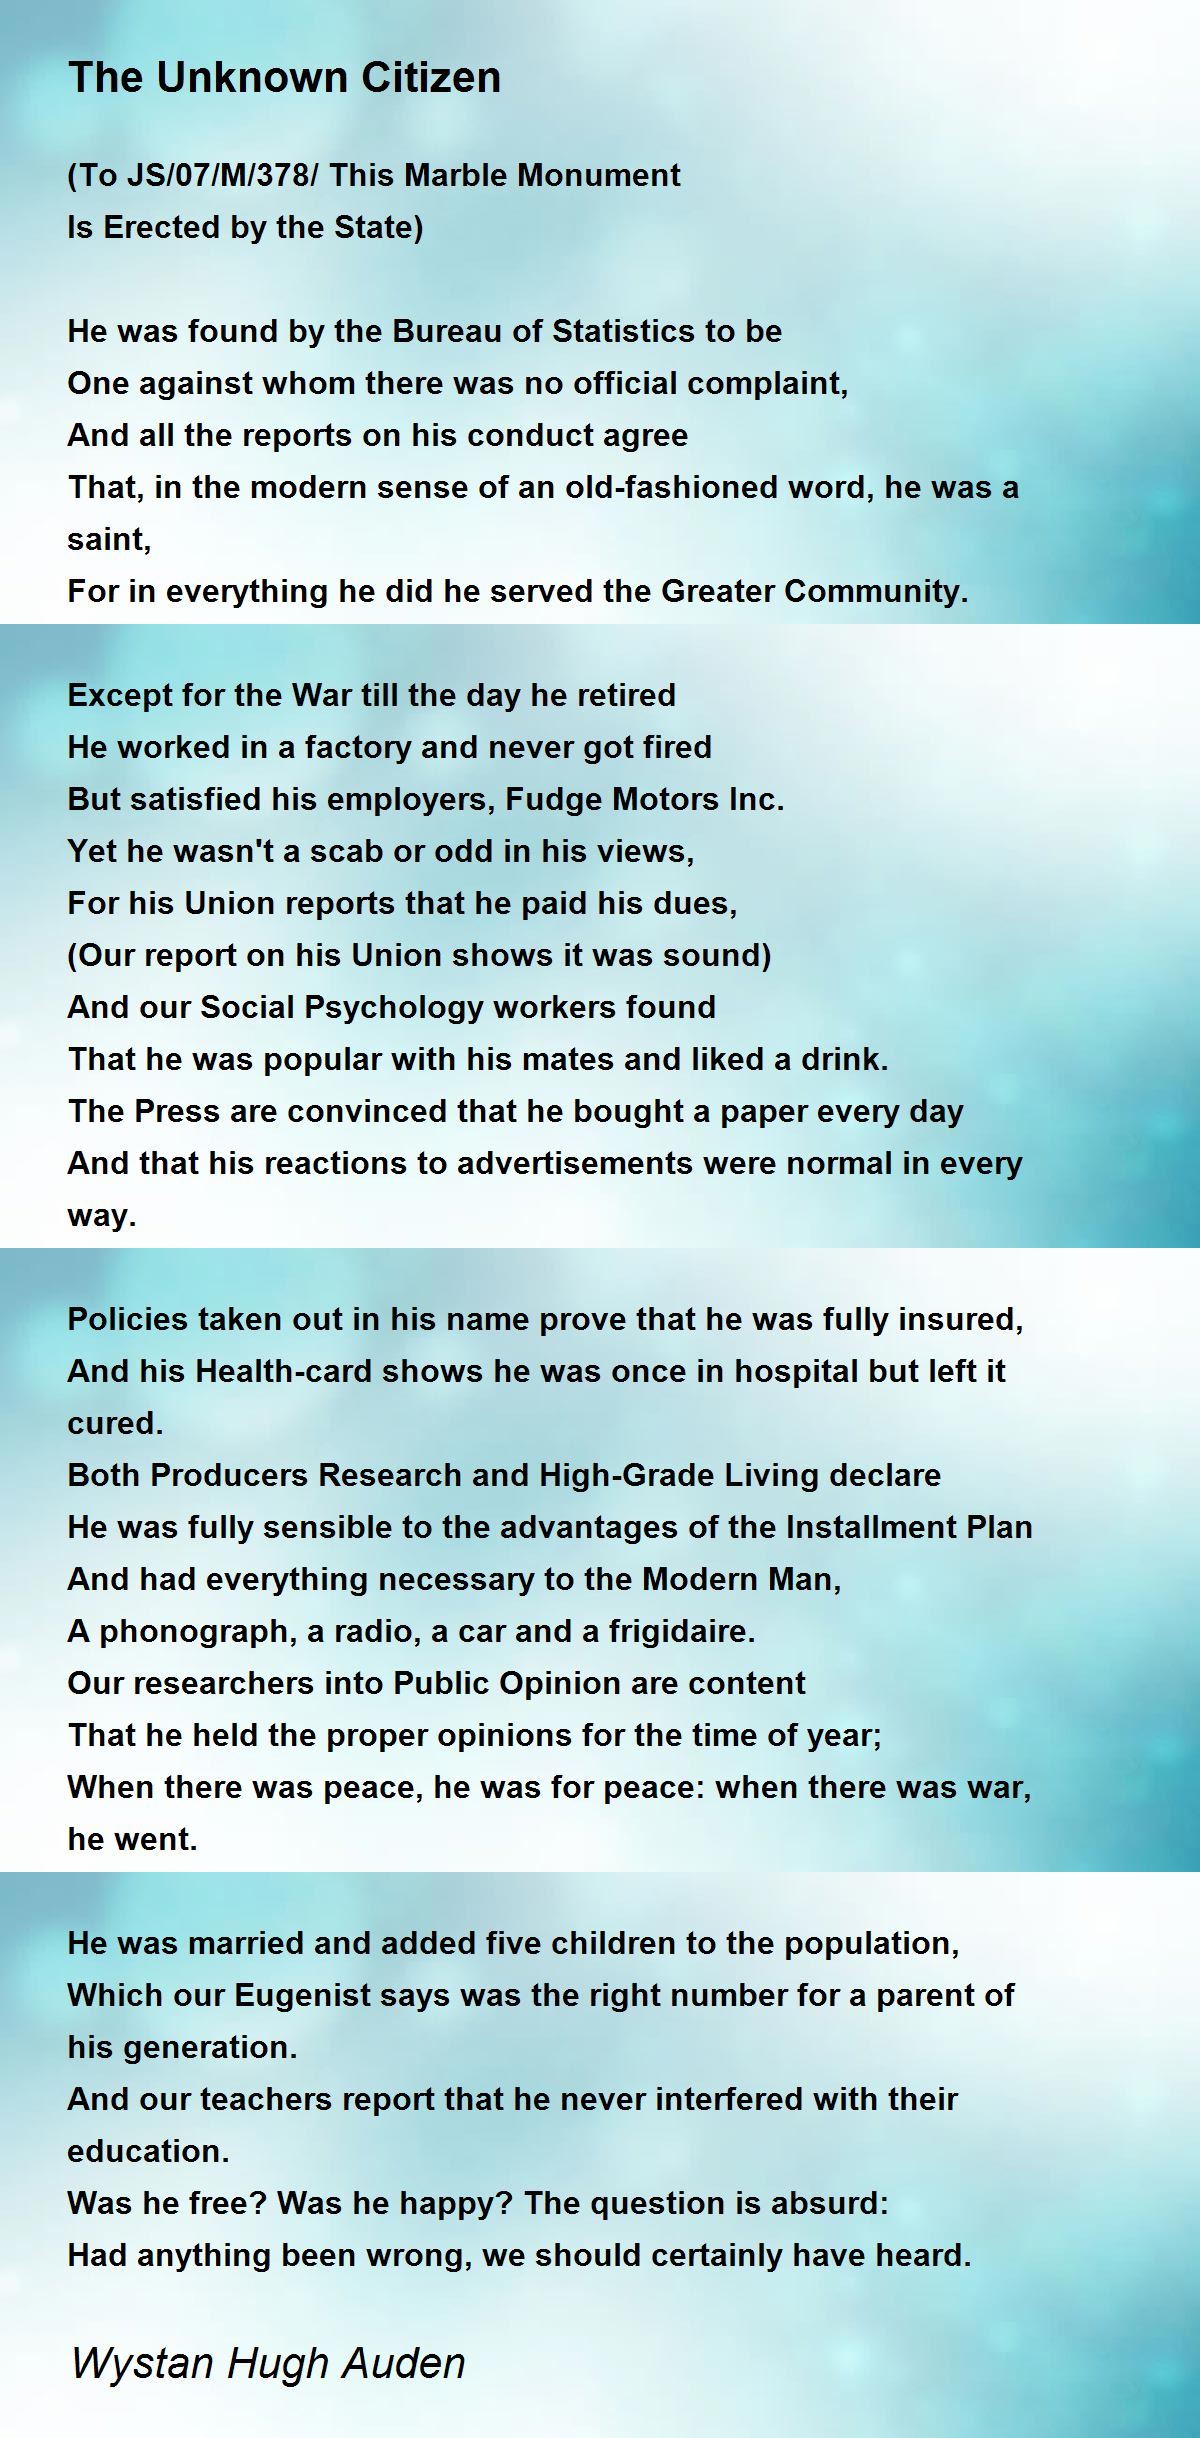 The Unknown Citizen - The Unknown Citizen Poem by Wystan Hugh Auden